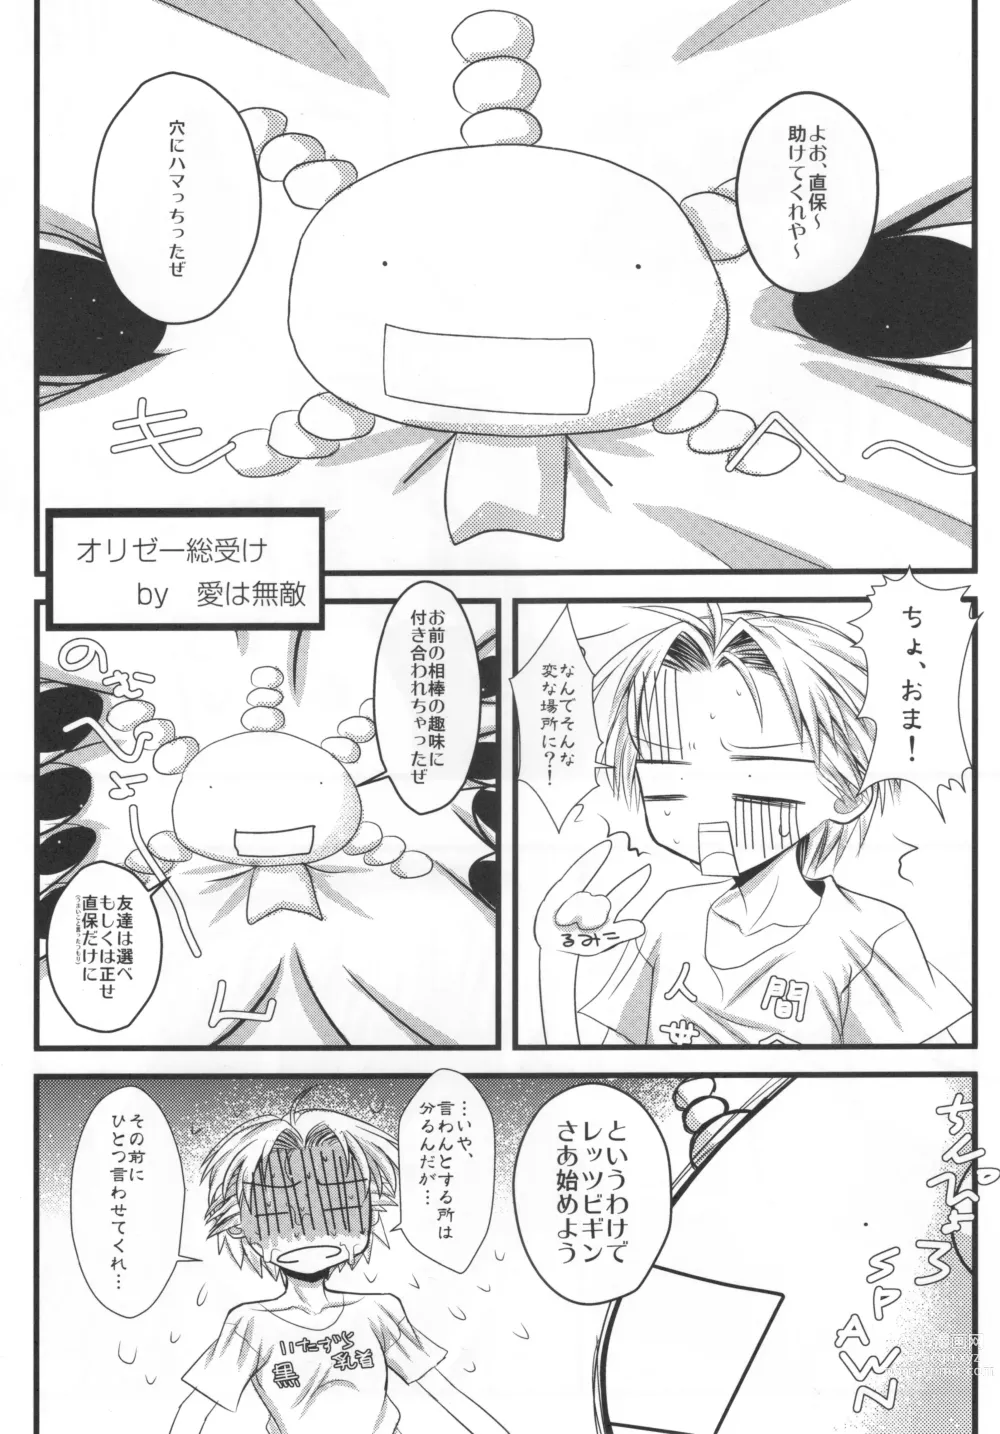 Page 12 of doujinshi Kamosu Moyasu 2